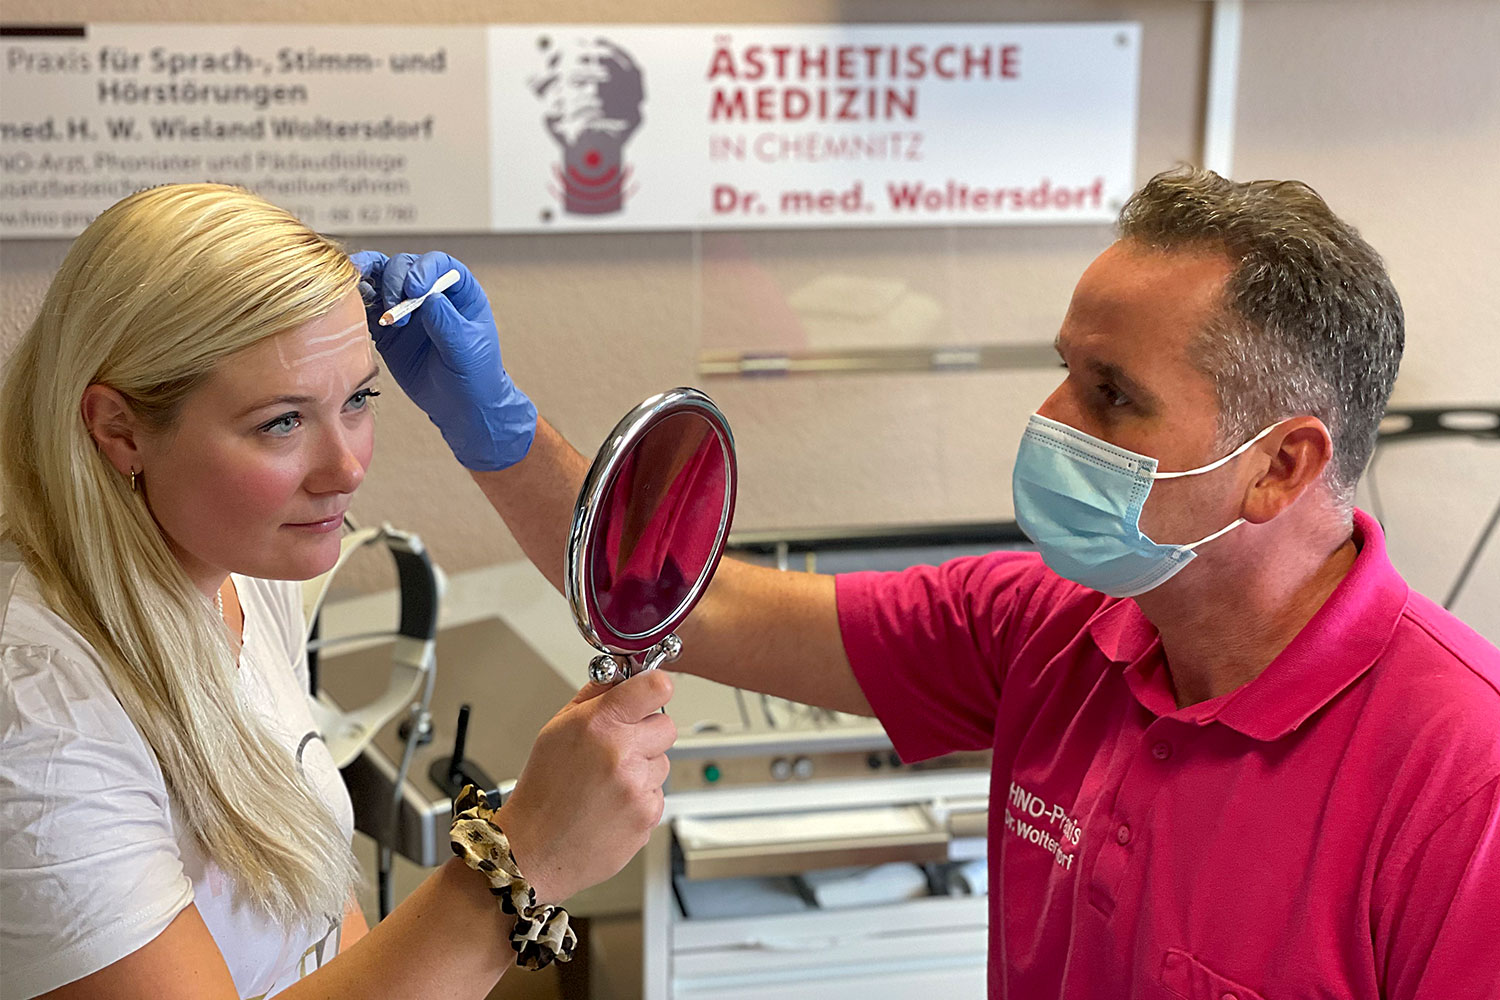 Dr. med. Woltersdorf: Experte für medizinisch-ästhetische Behandlung mit Botulinum